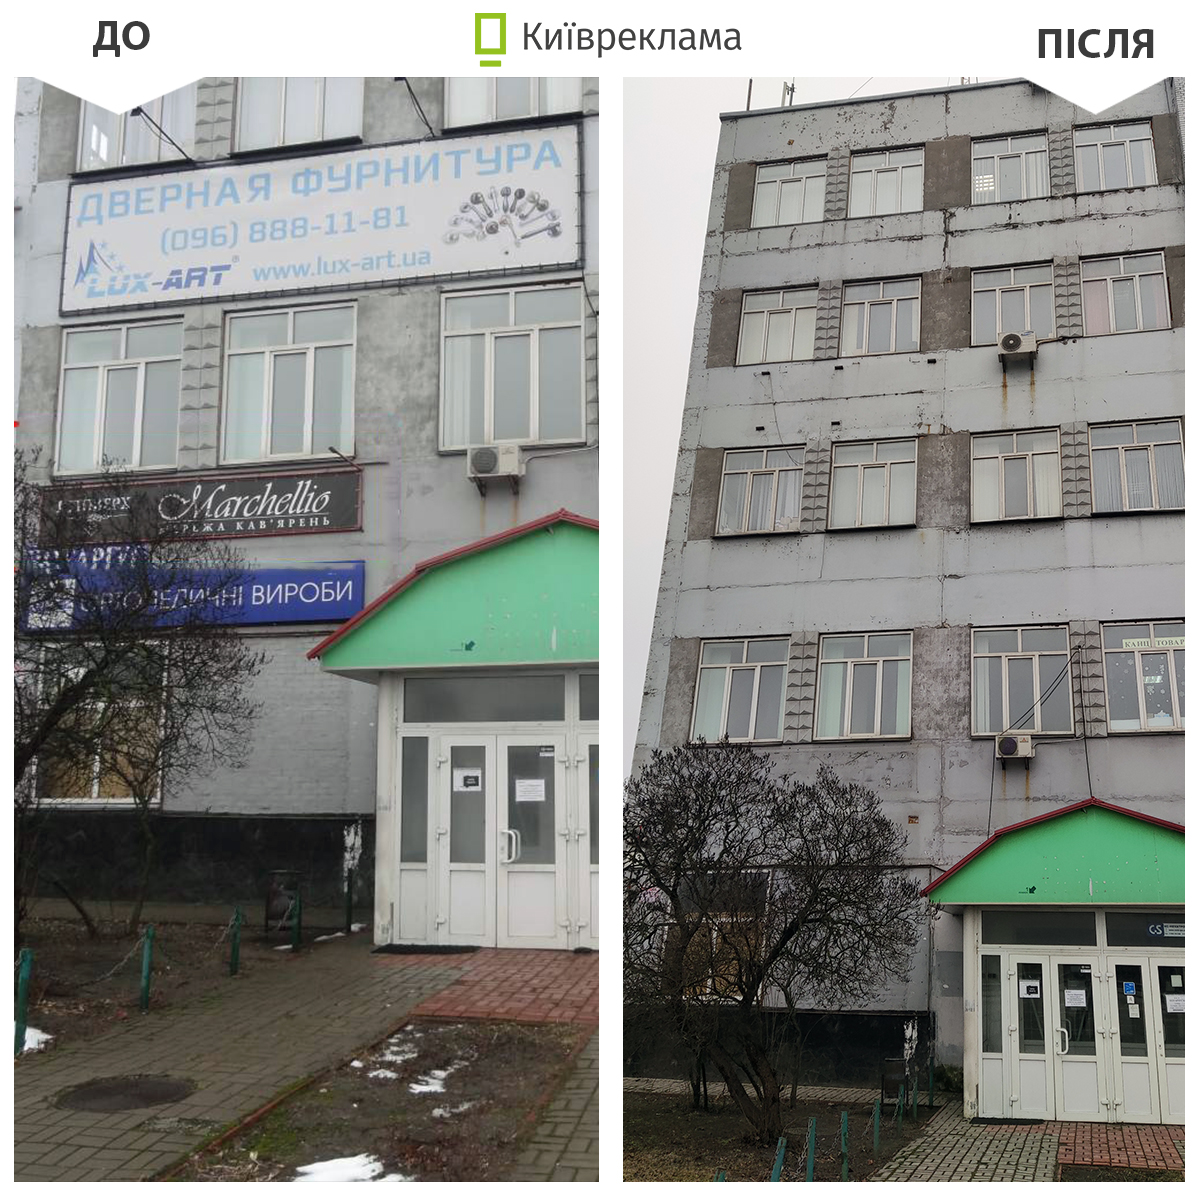 Цього тижня у Києві міський простір очистили від незаконної реклами та вивісок на окремих локаціях.